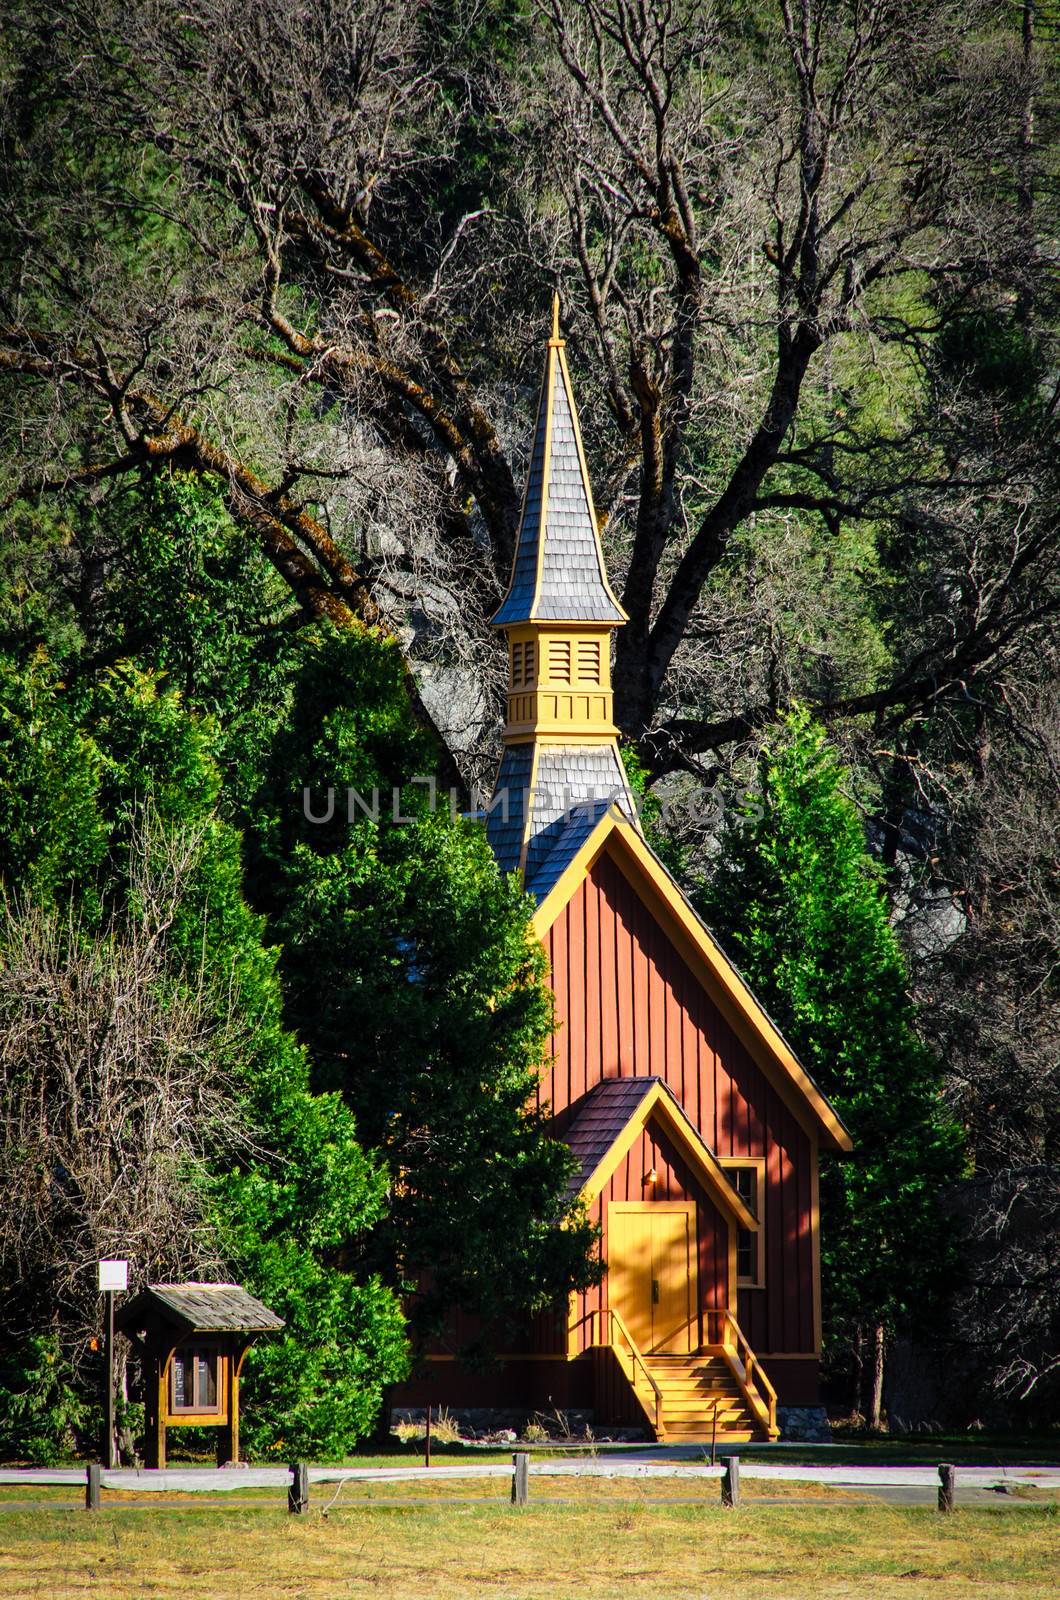 Church, Yosemite National Park, USA by CelsoDiniz